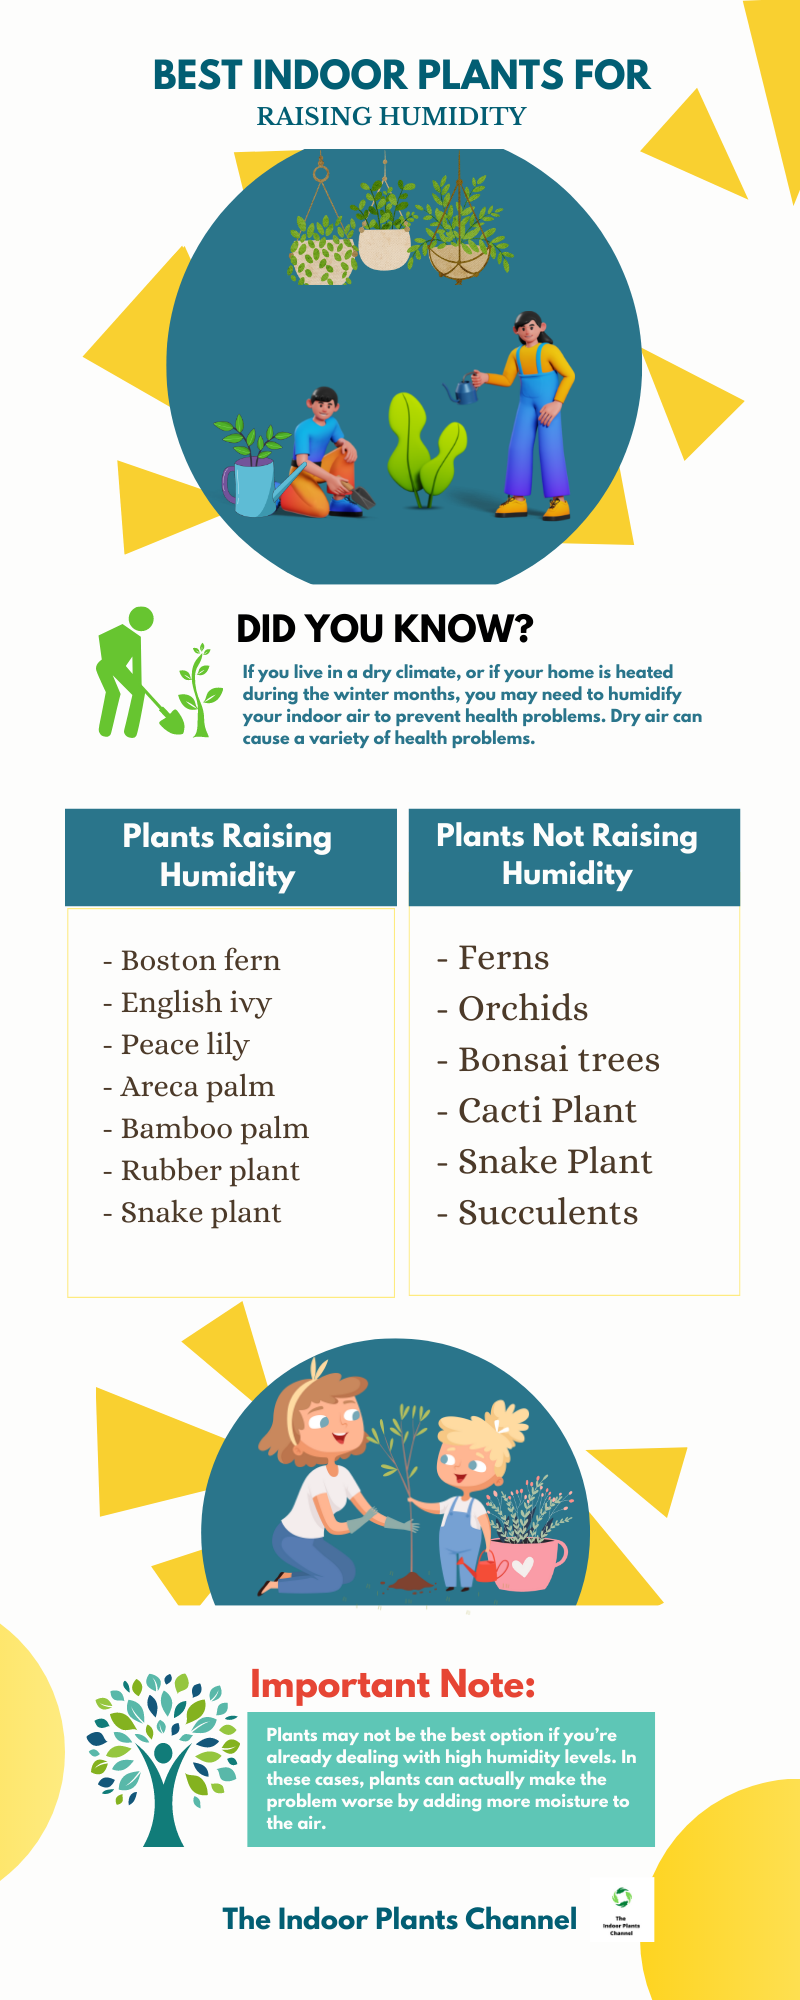 5 Best Indoor Plants For Raising Humidity